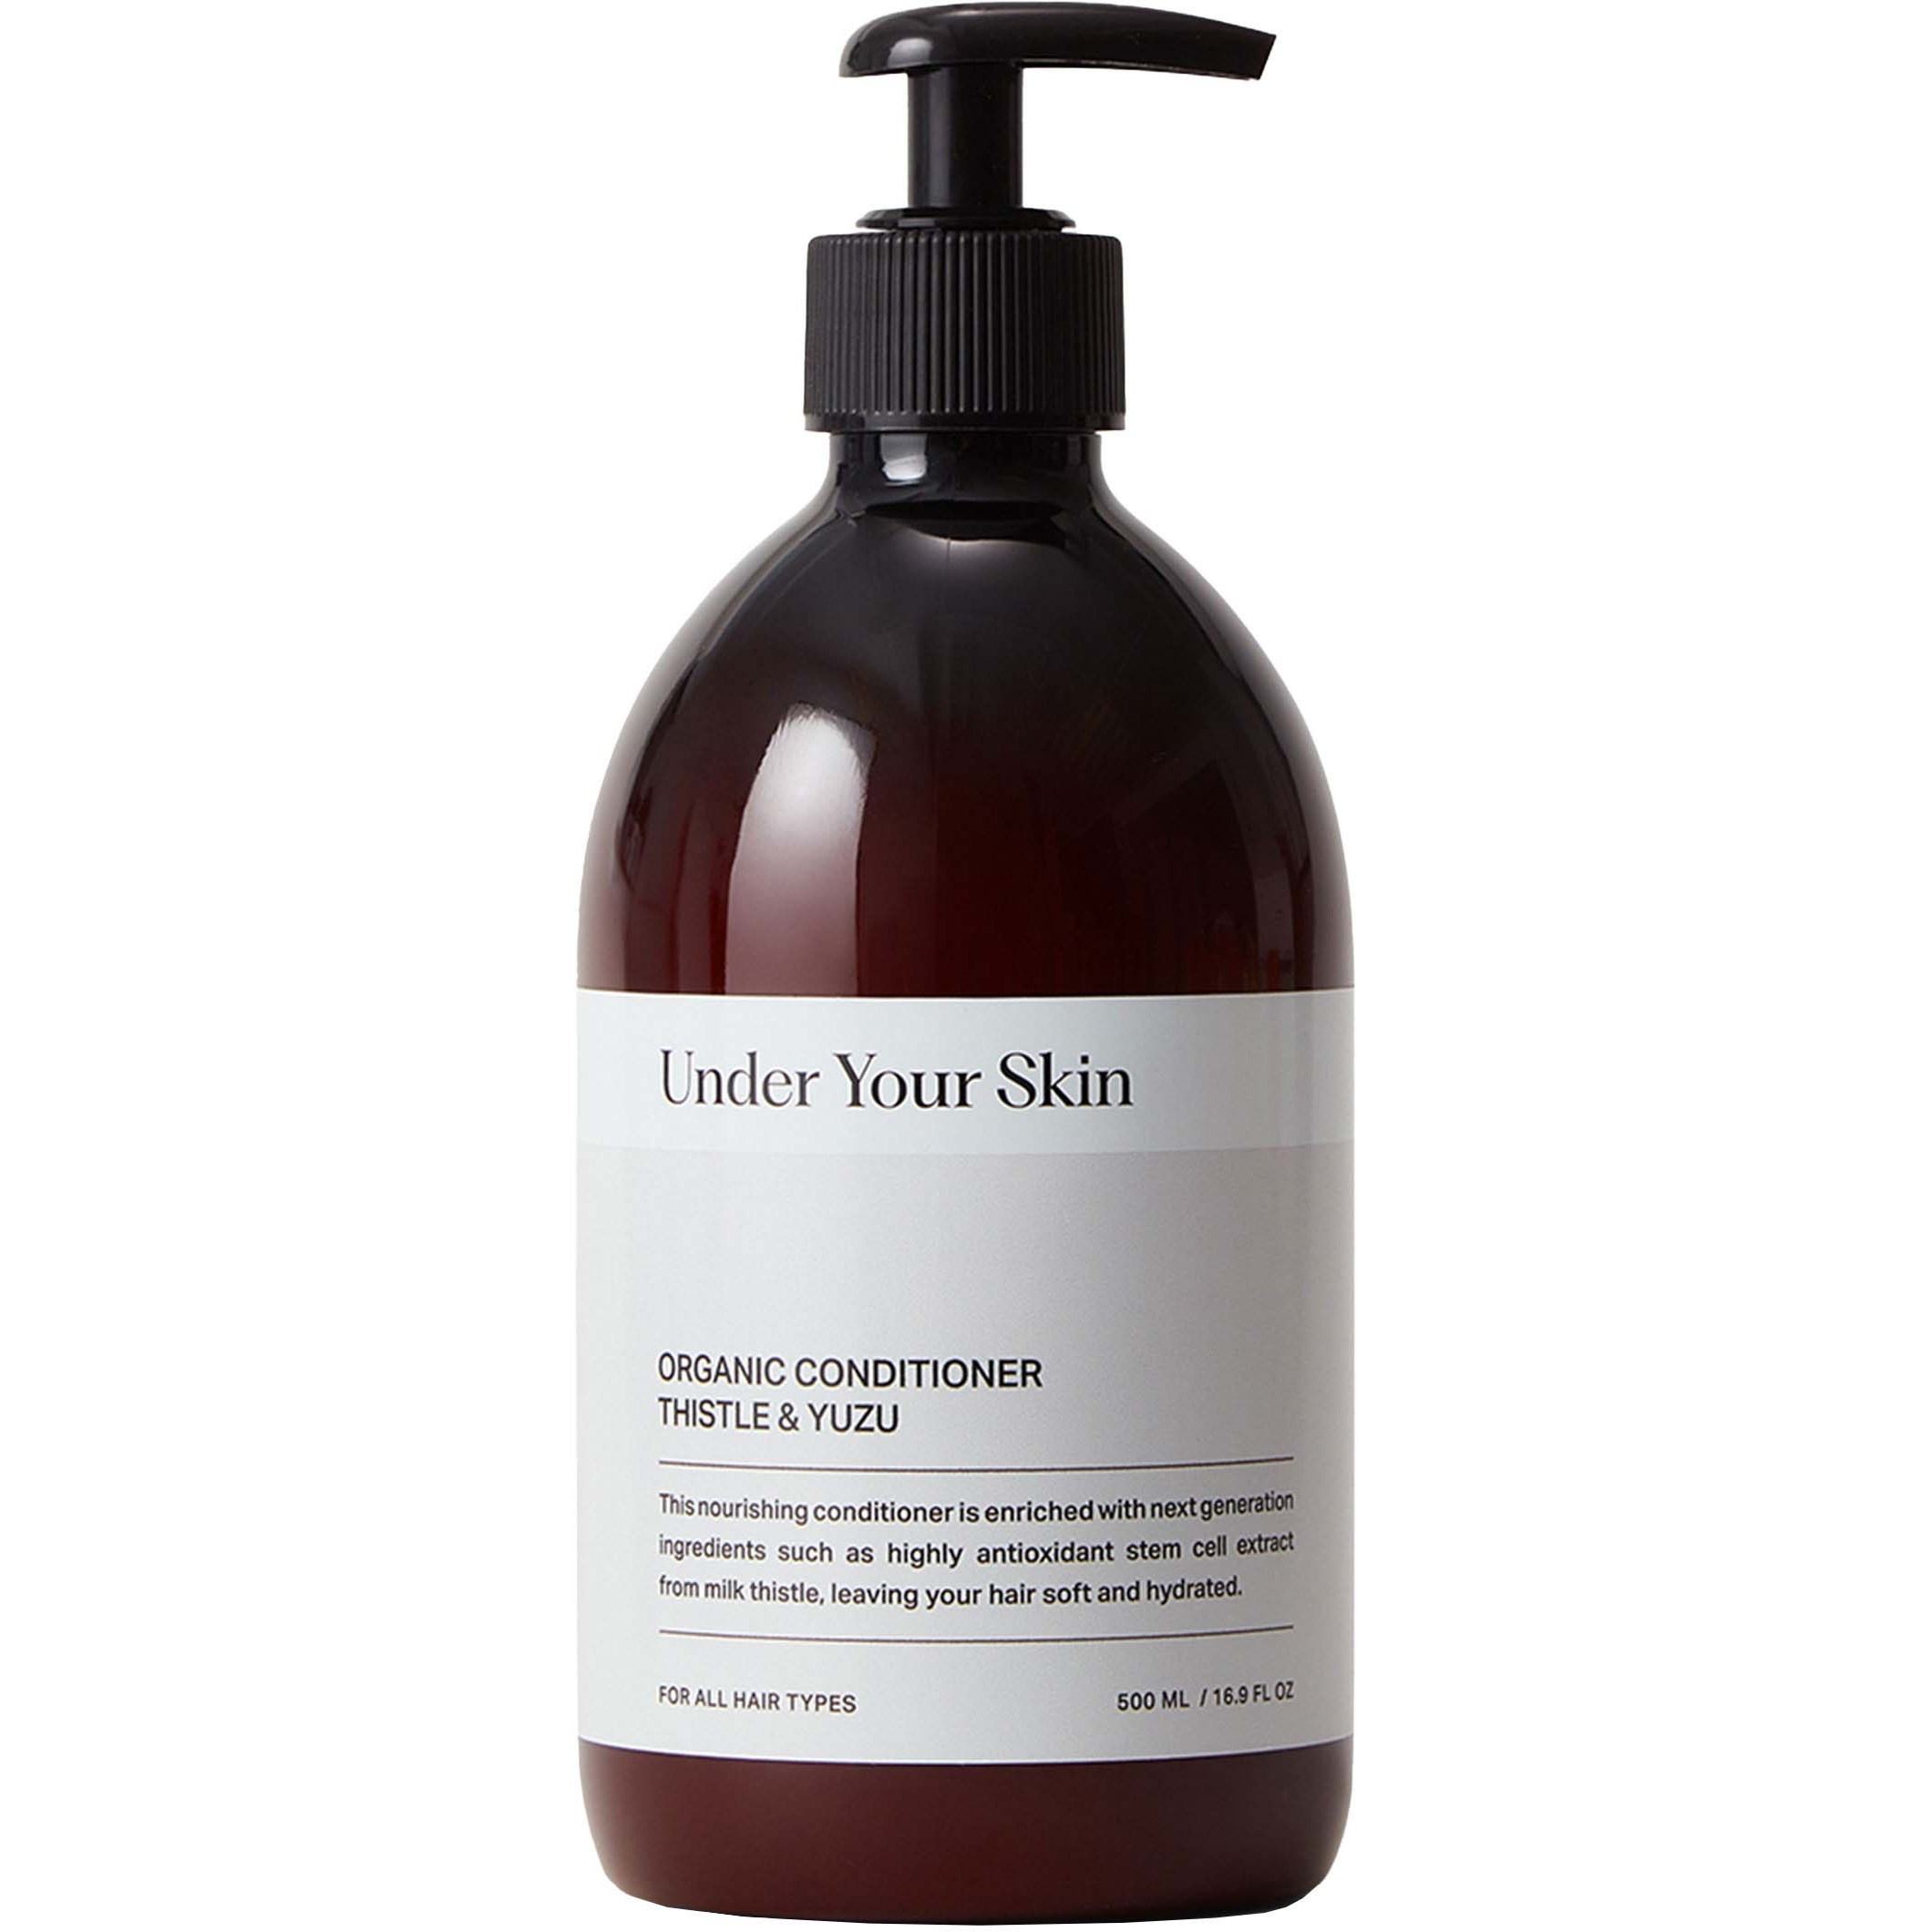 Under Your Skin Organic Detox Conditioner - Thistle/Yuzu 500 ml